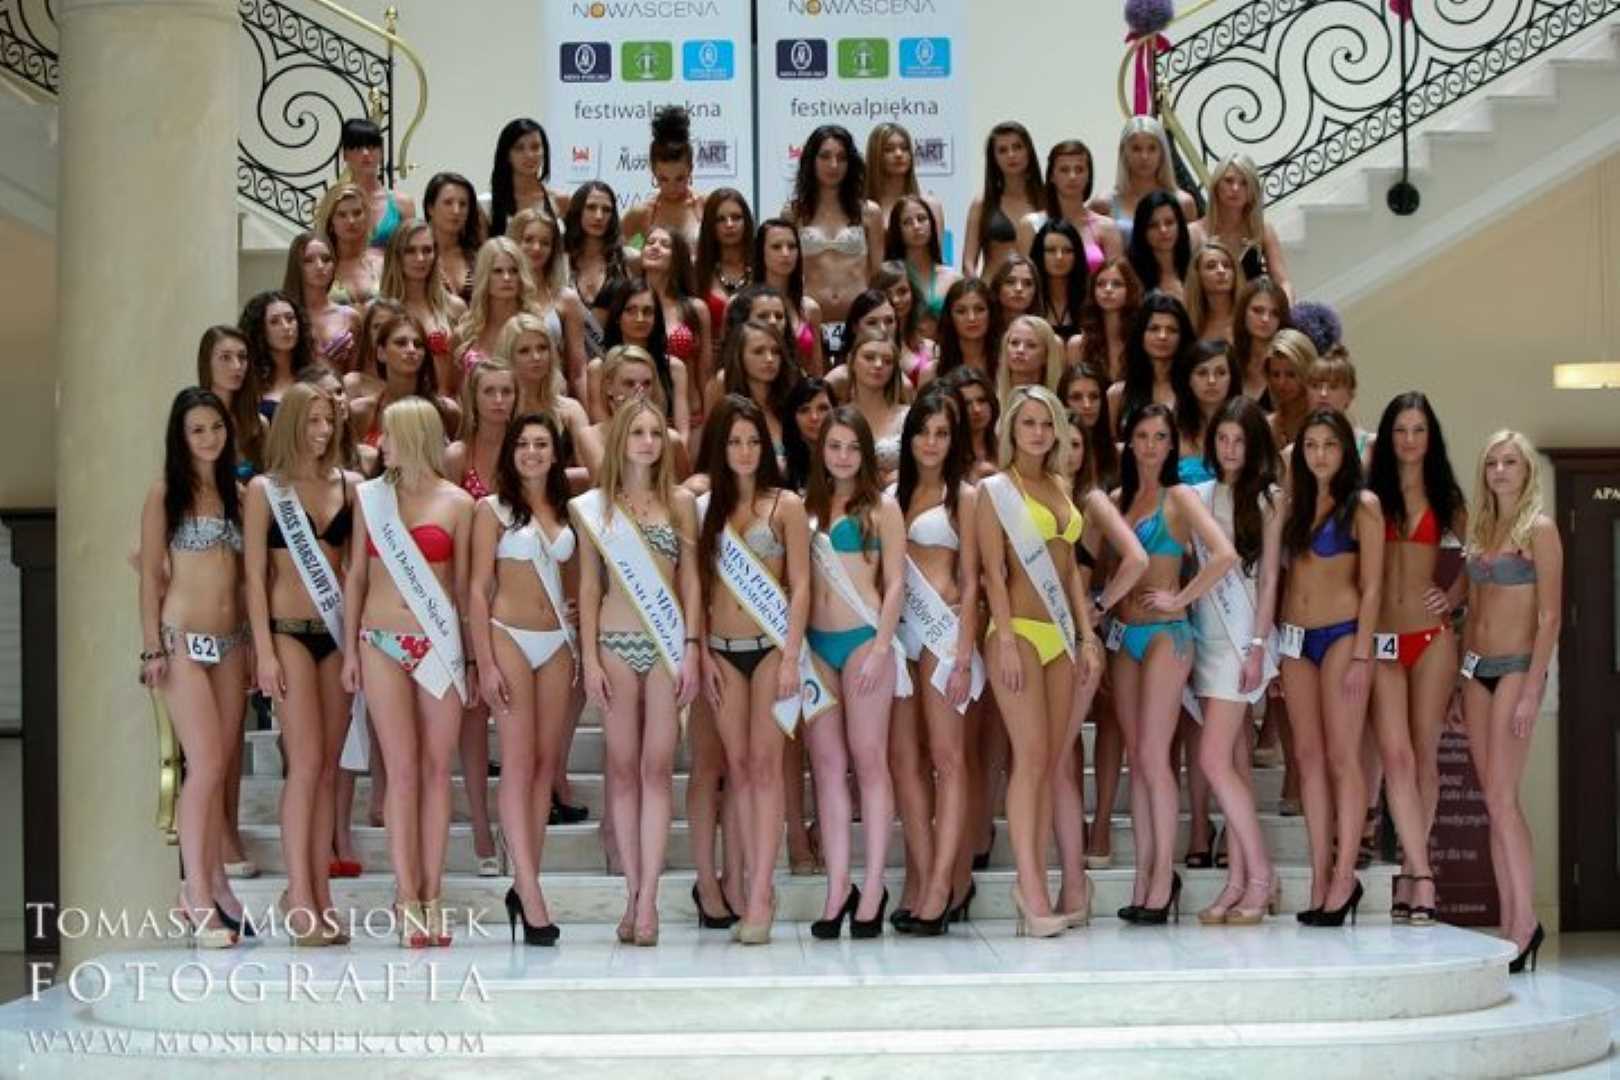 , Miss Warmii i Mazur 2012 w ćwierćfinale Miss Polski, Miss Warmii i Mazur, Miss Warmii i Mazur